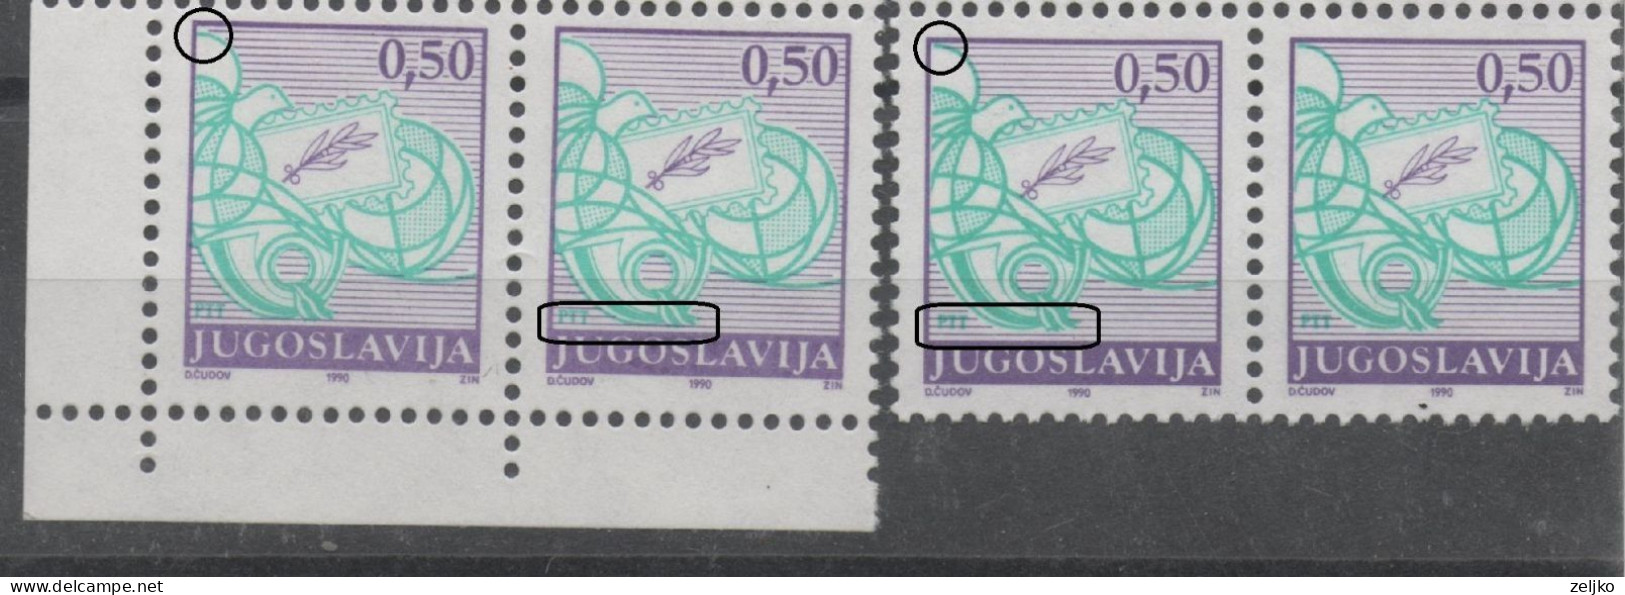 Yugoslavia, Error, MNH, 1990, Michel 2398, , Green Colour Shifted Up_down, 2 Pairs Of Stamps - Non Dentelés, épreuves & Variétés